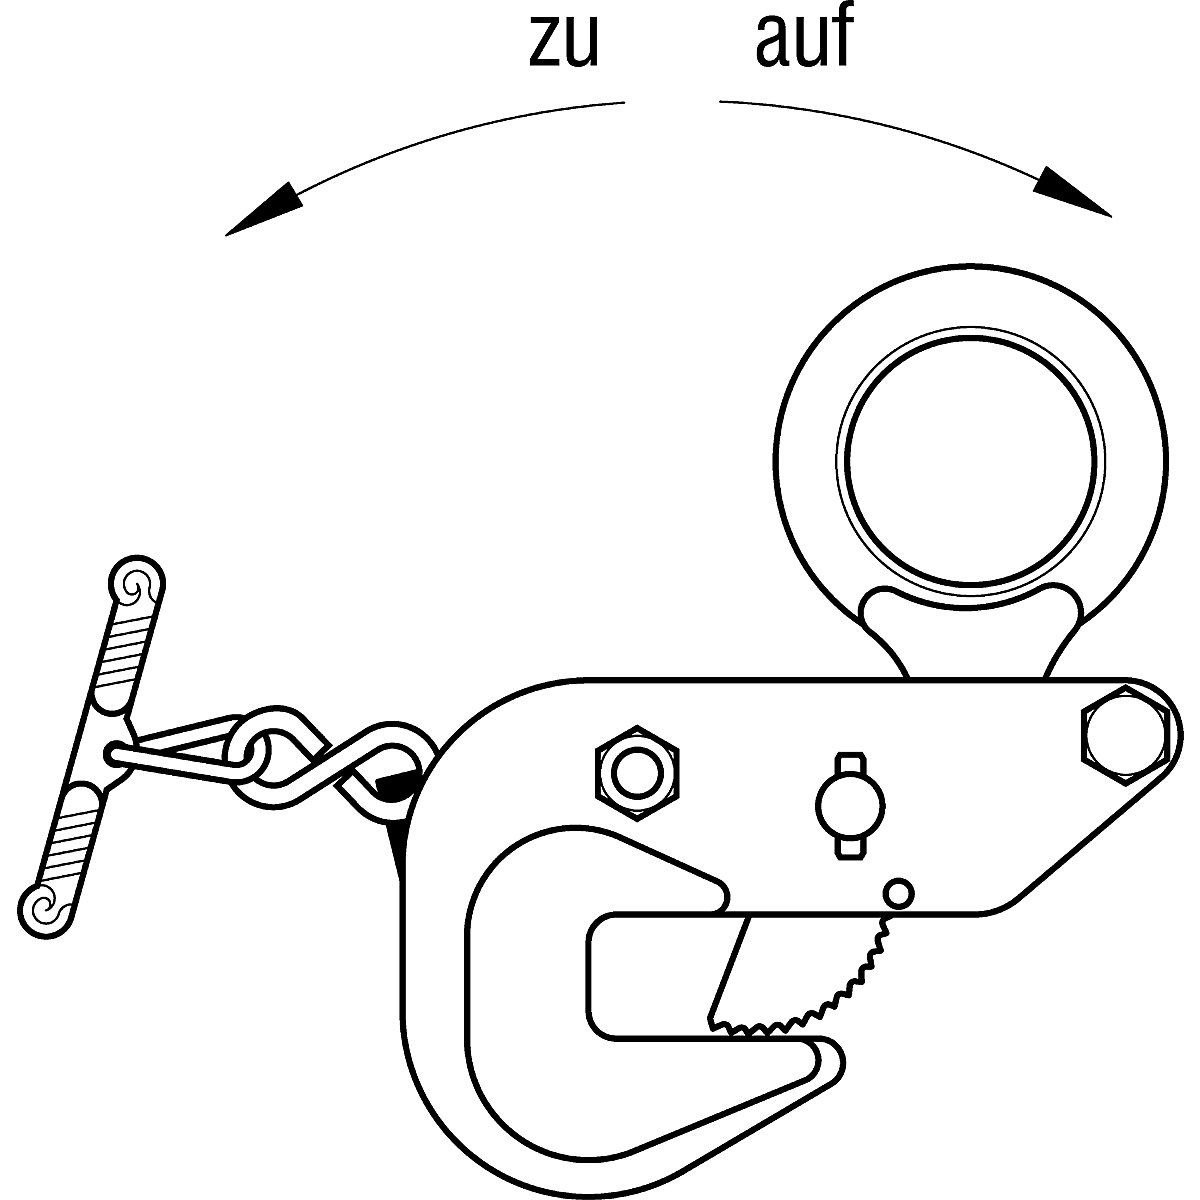 Pinza de suspensión modelo M, para uso en horizontal – Pfeifer (Imagen del producto 6)-5